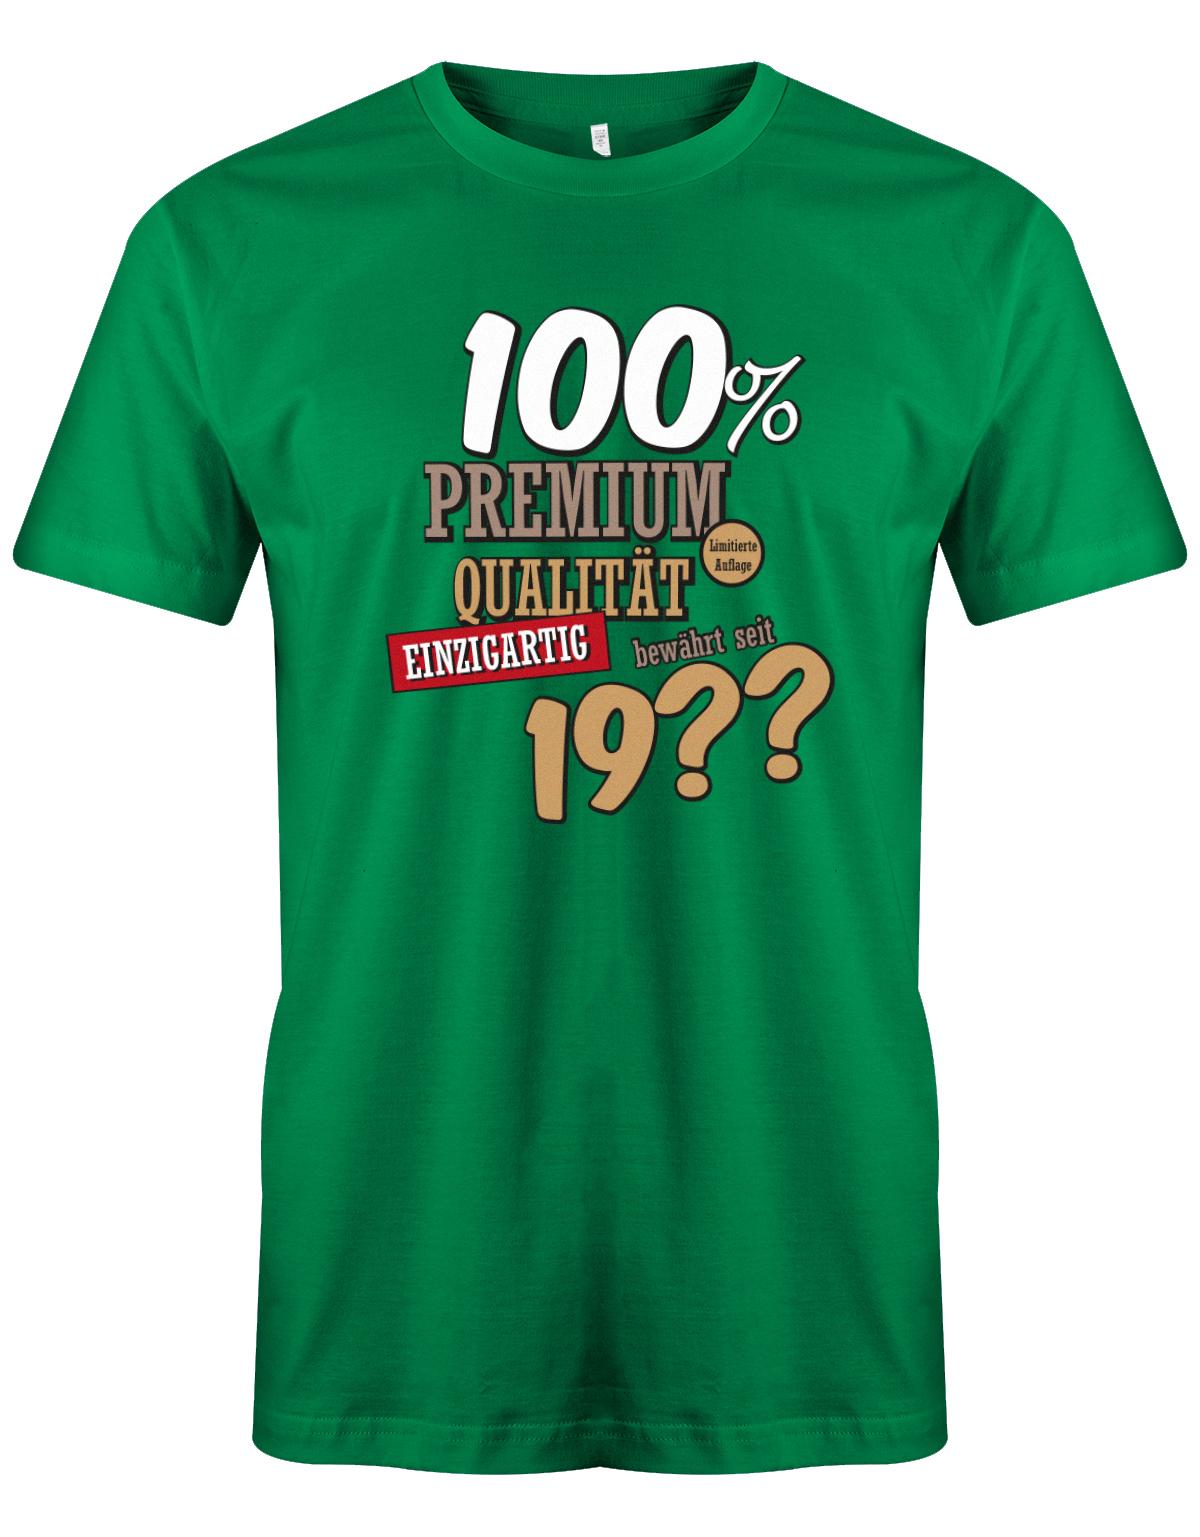 100Prozent-Premium-Qualit-t-shirt-seit-geburtsjahr-Herren-Geburtstag-Shirt-Lustiges T-Shirt zu Bedruckt Junge Lustig ist ein tolles  geschenk Jungen  geburtstag Junge  Geburtstag tshirt ✓ shirt geburtstag grün